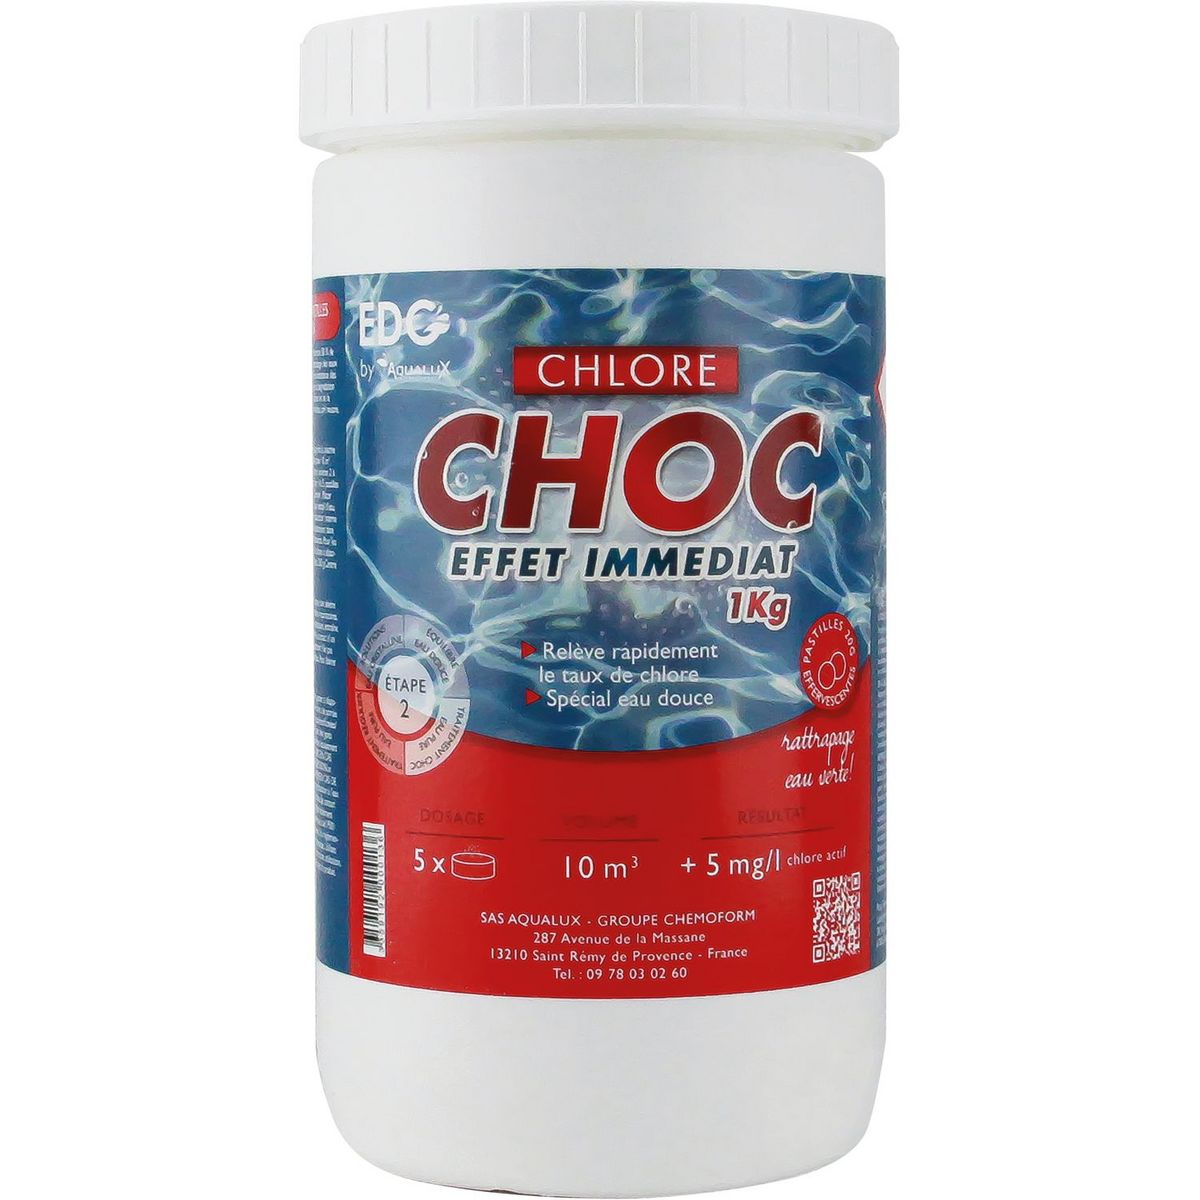 EDG By Aqualux Chlore Choc pastilles 20g - Pot de 1kg